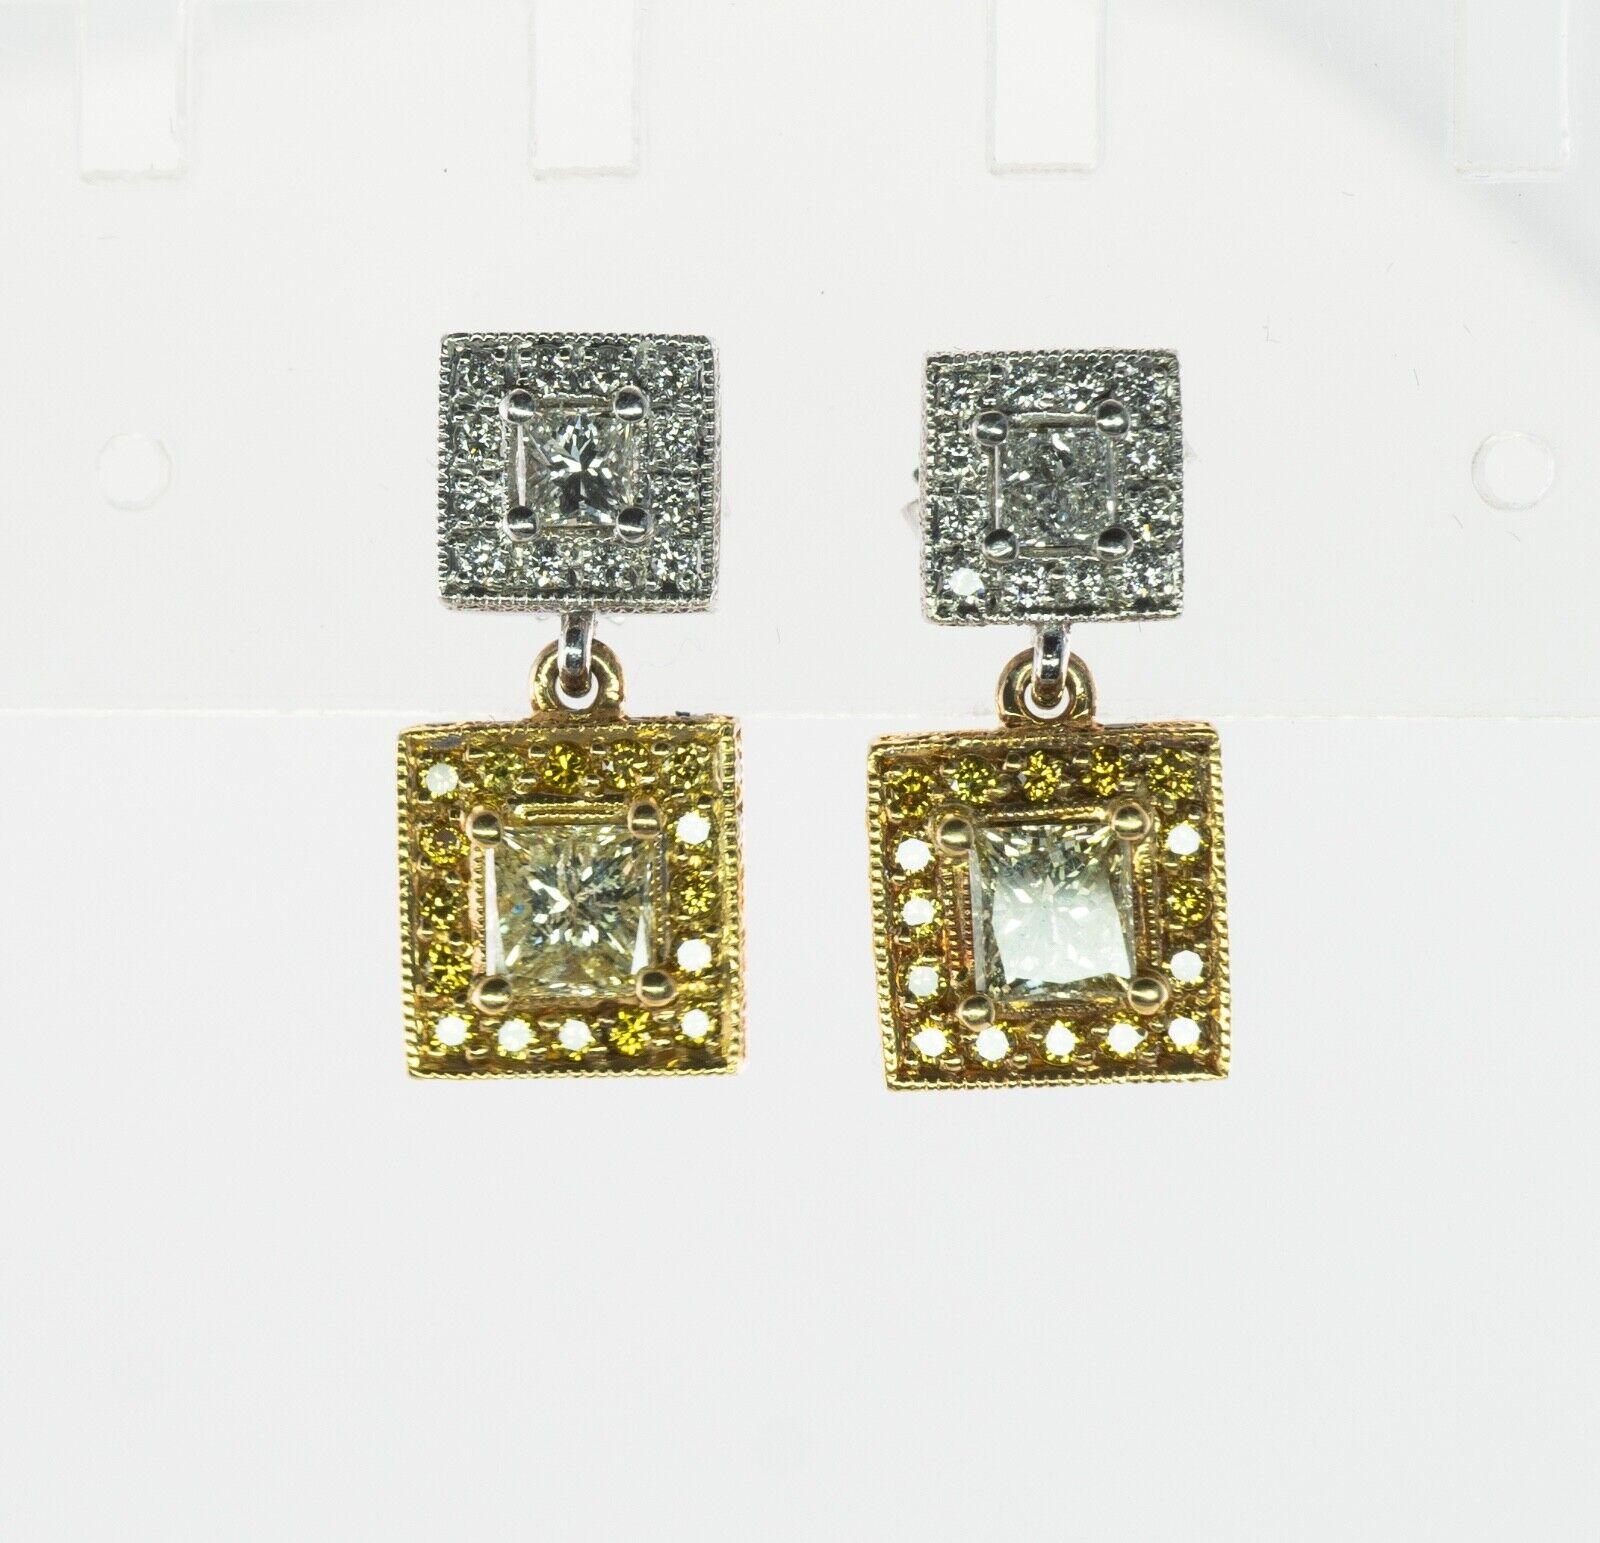 Diamant-Ohrringe 18K Gold Platin-Ohrringe mit 2,84 TDW

Diese herrlichen Ohrringe sind aus massivem 18-karätigem Gelbgold und Platin gefertigt. Das Gold wird sorgfältig geprüft und garantiert. Auf dem oberen Teil eines Ohrrings befindet sich ein